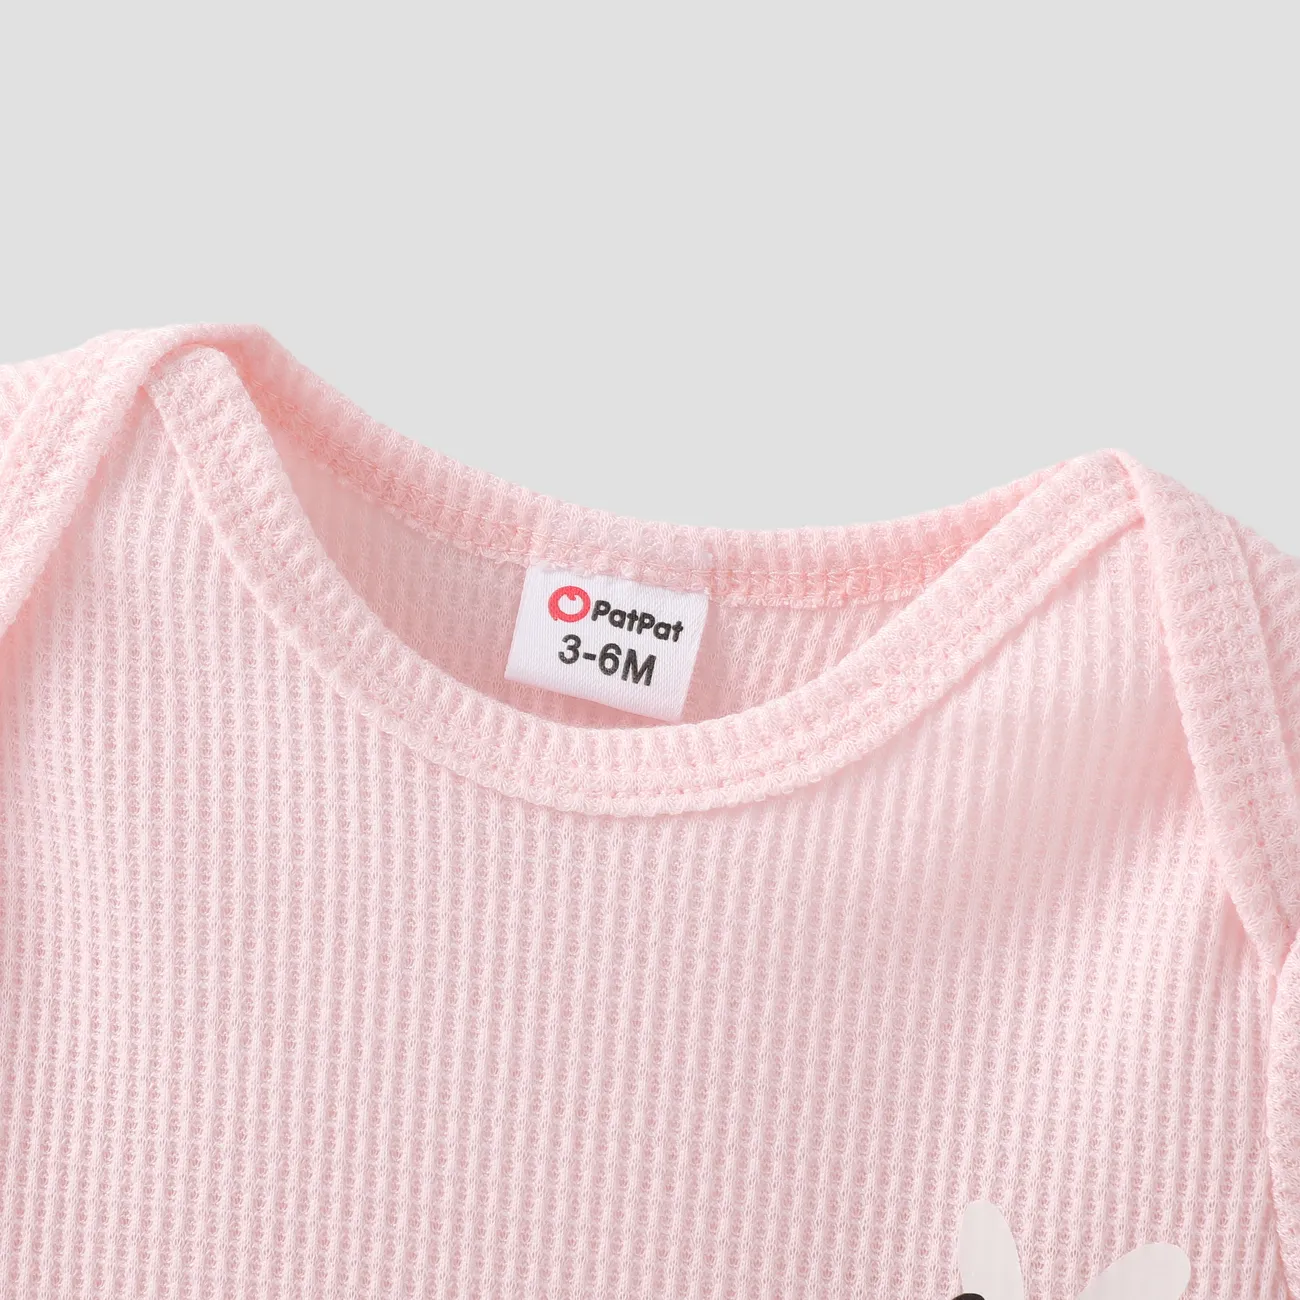 2件 嬰兒 女 蜜蜂 基礎 短袖 嬰兒套裝 粉色 big image 1